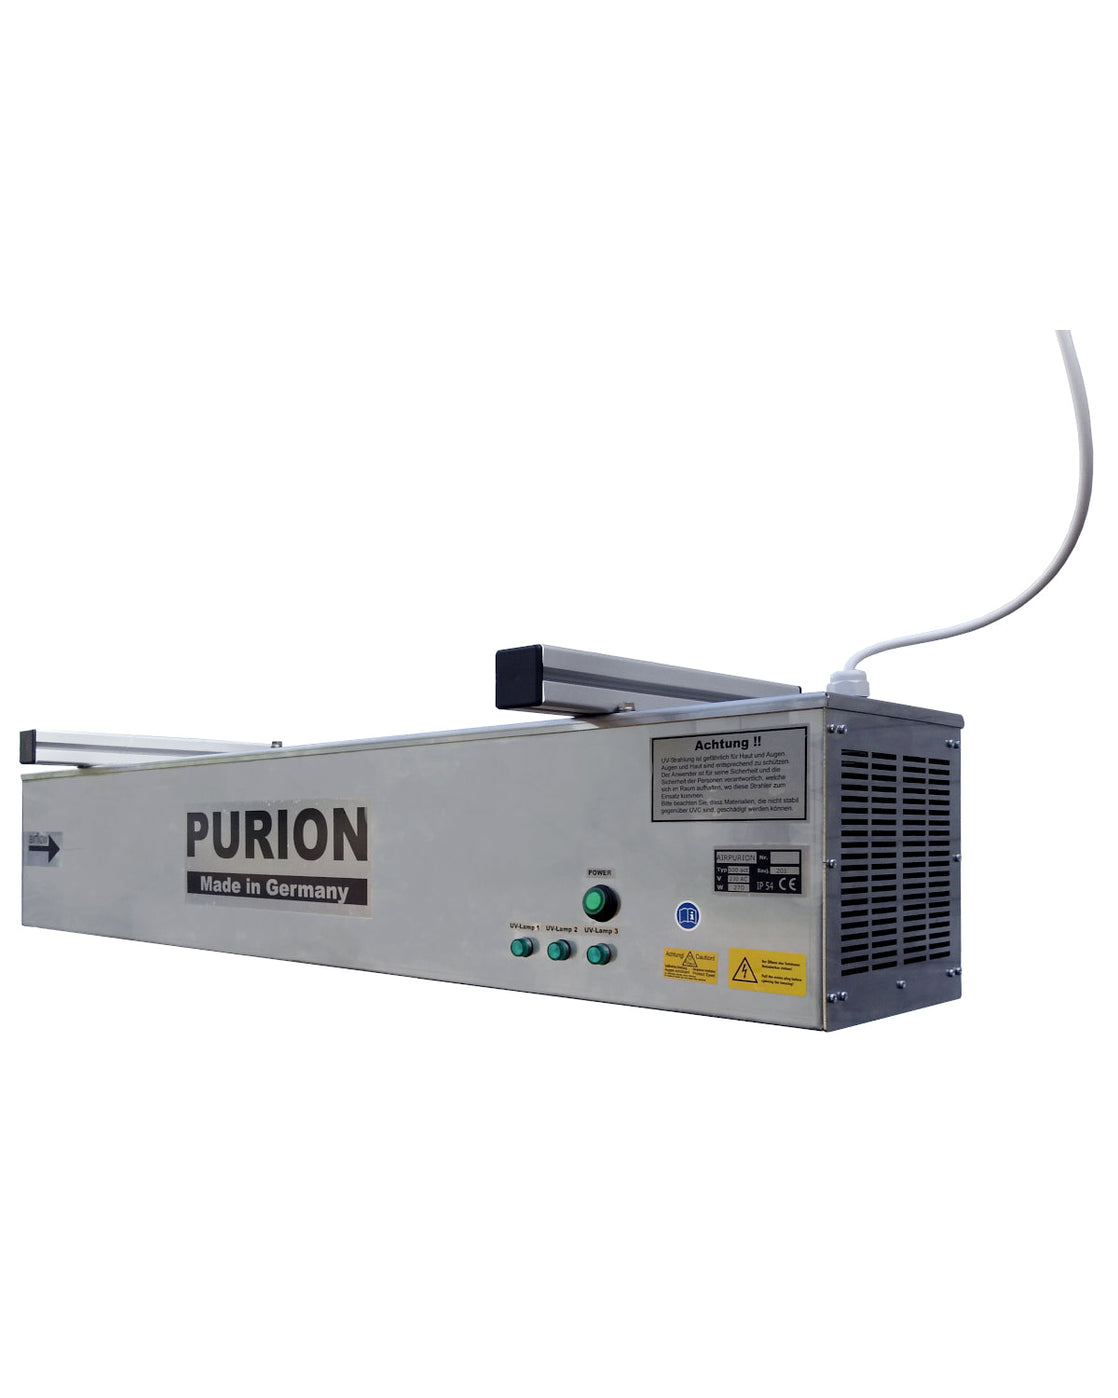 Auf weißem Hintergrund wird ein AIRPURION 300 active Silent Plus Gerät der PURION GmbH präsentiert, das seine Desinfektionsleistung und energiesparenden Eigenschaften hervorhebt.